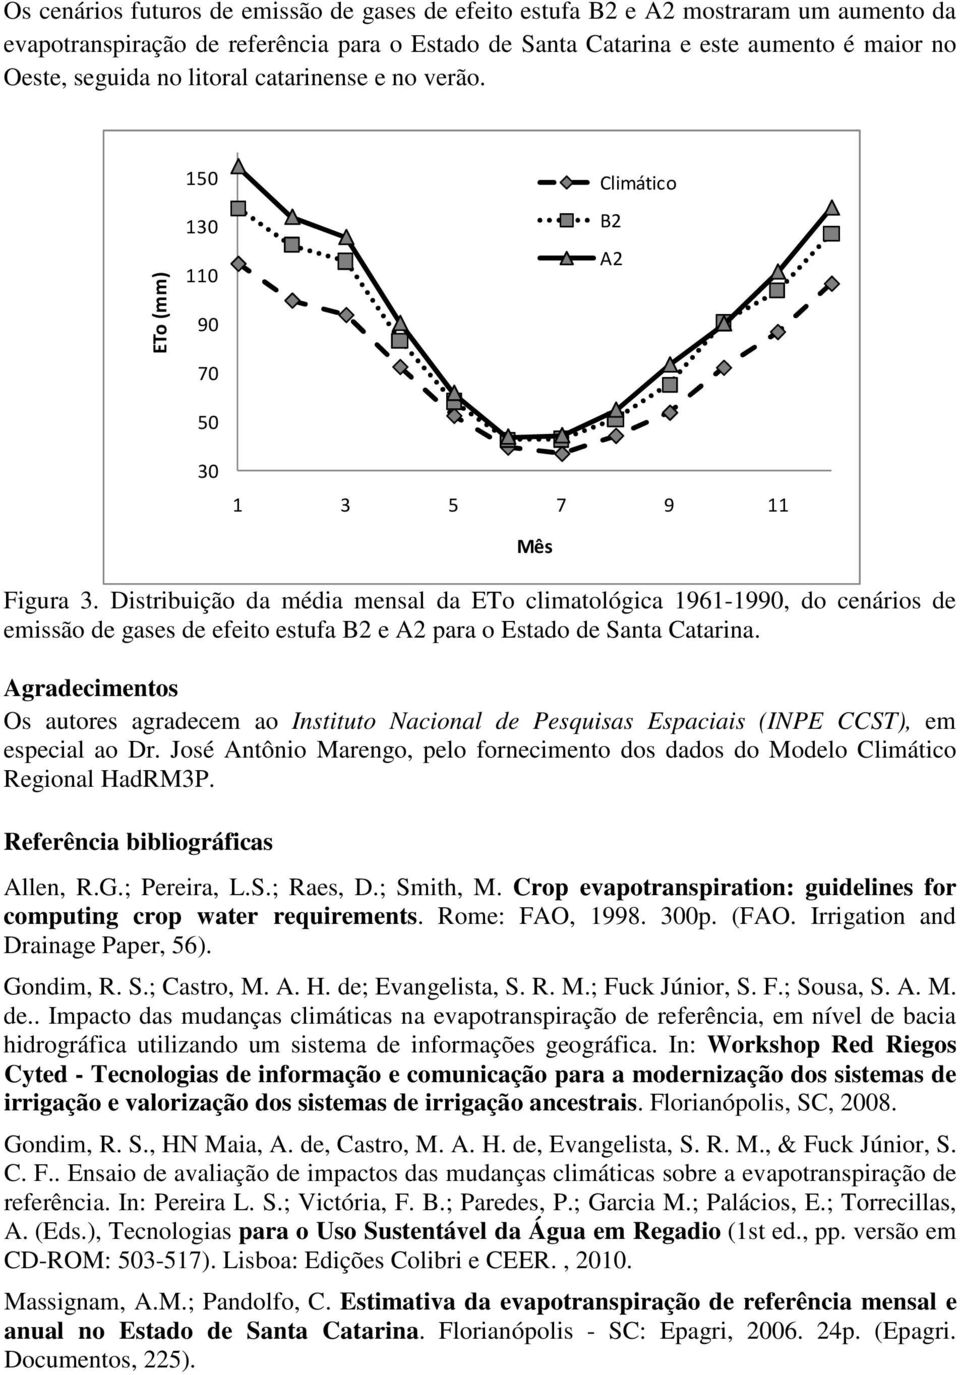 Distribuição da média mensal da ETo climatológica 1961-1990, do cenários de emissão de gases de efeito estufa B2 e A2 para o Estado de Santa Catarina.